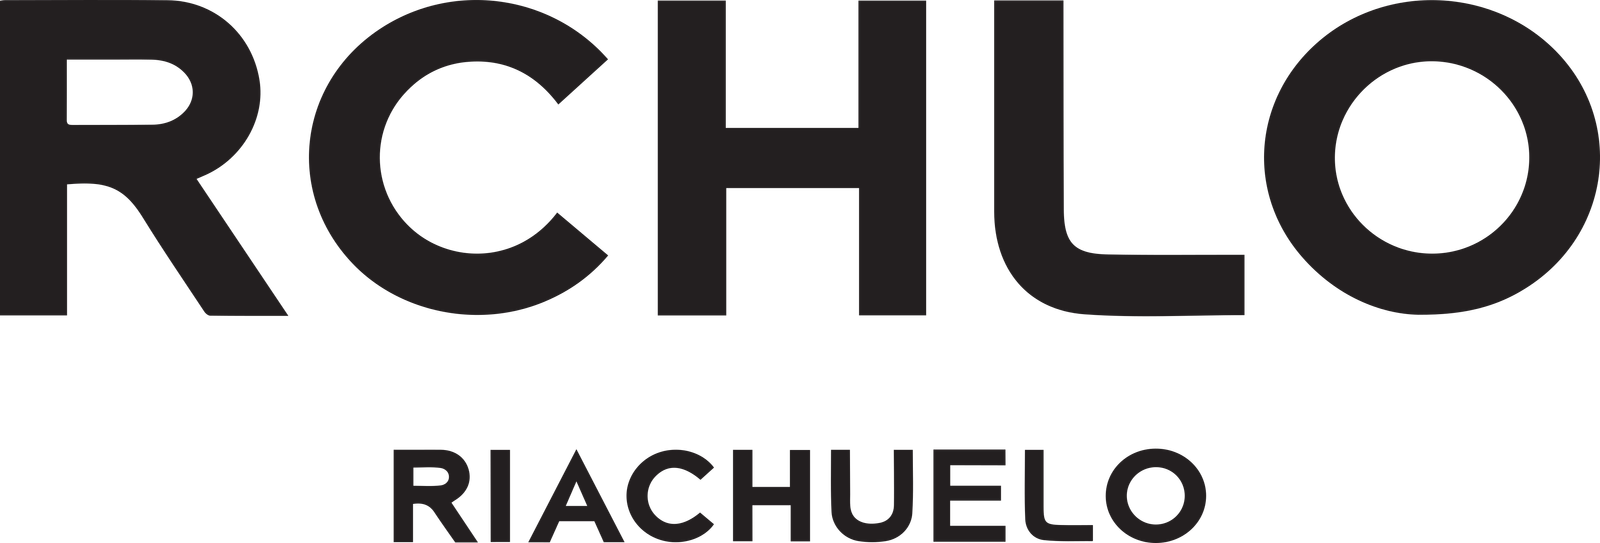 riachuelo-logo-1